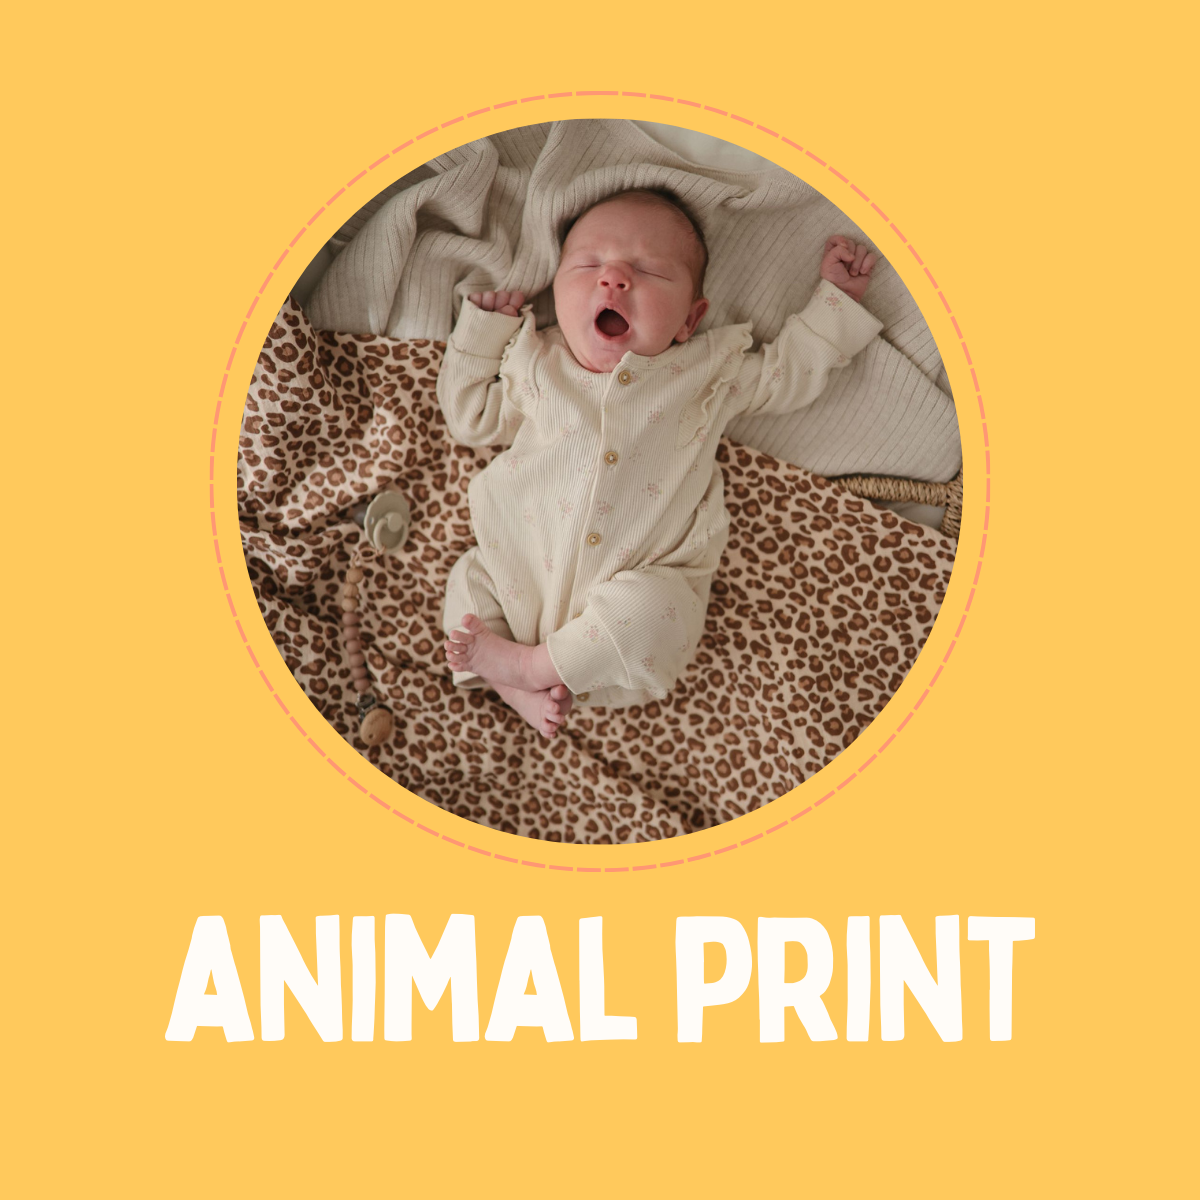 Animal Print Collection